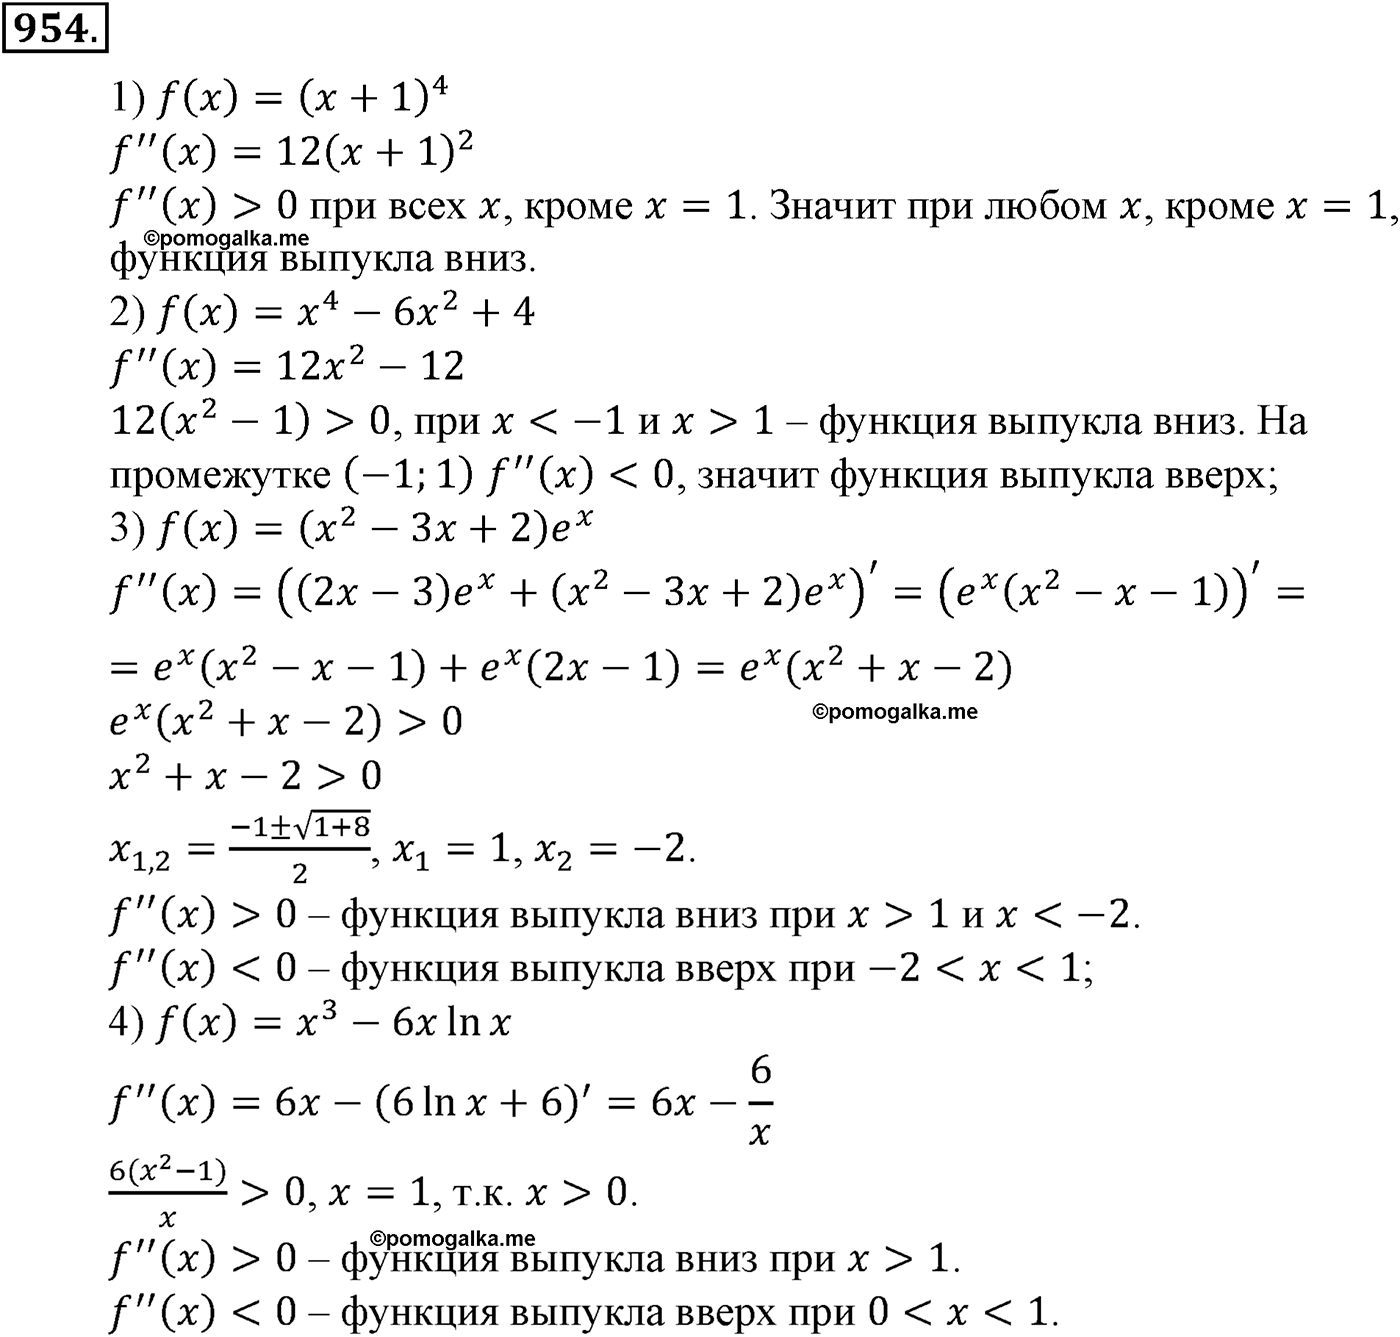 разбор задачи №954 по алгебре за 10-11 класс из учебника Алимова, Колягина